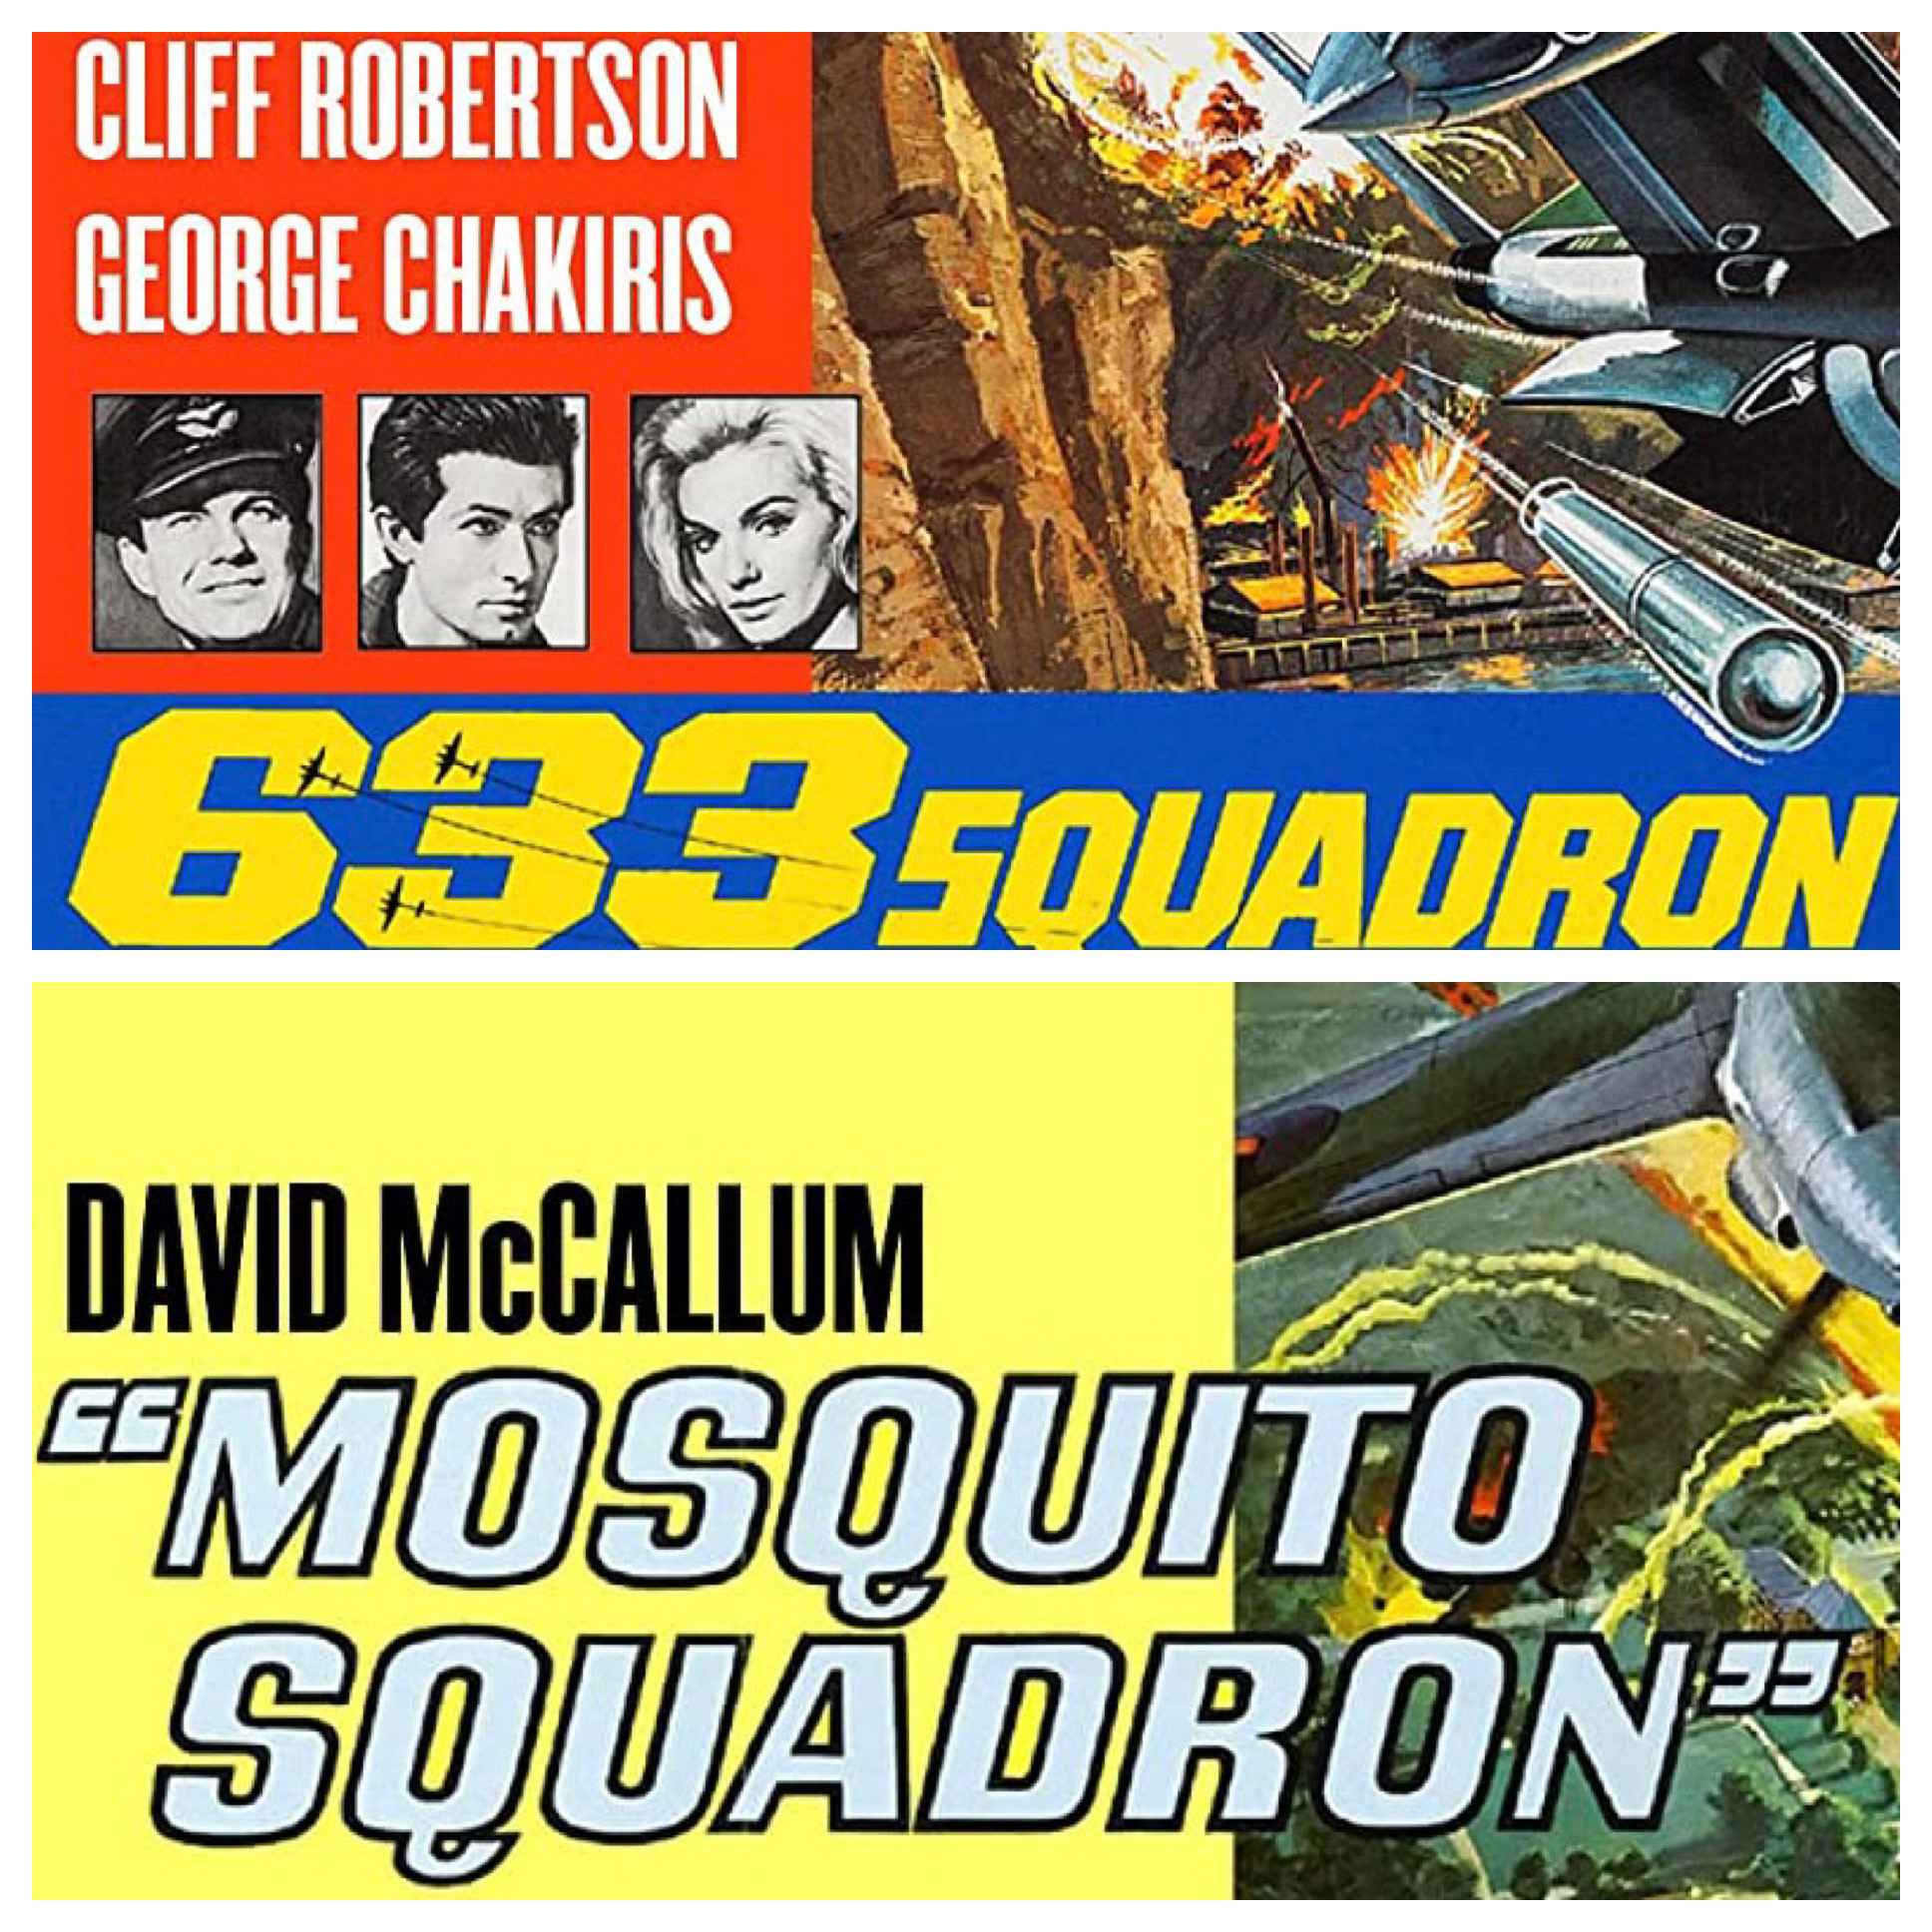 633 Squadron / Mosquito Squadron